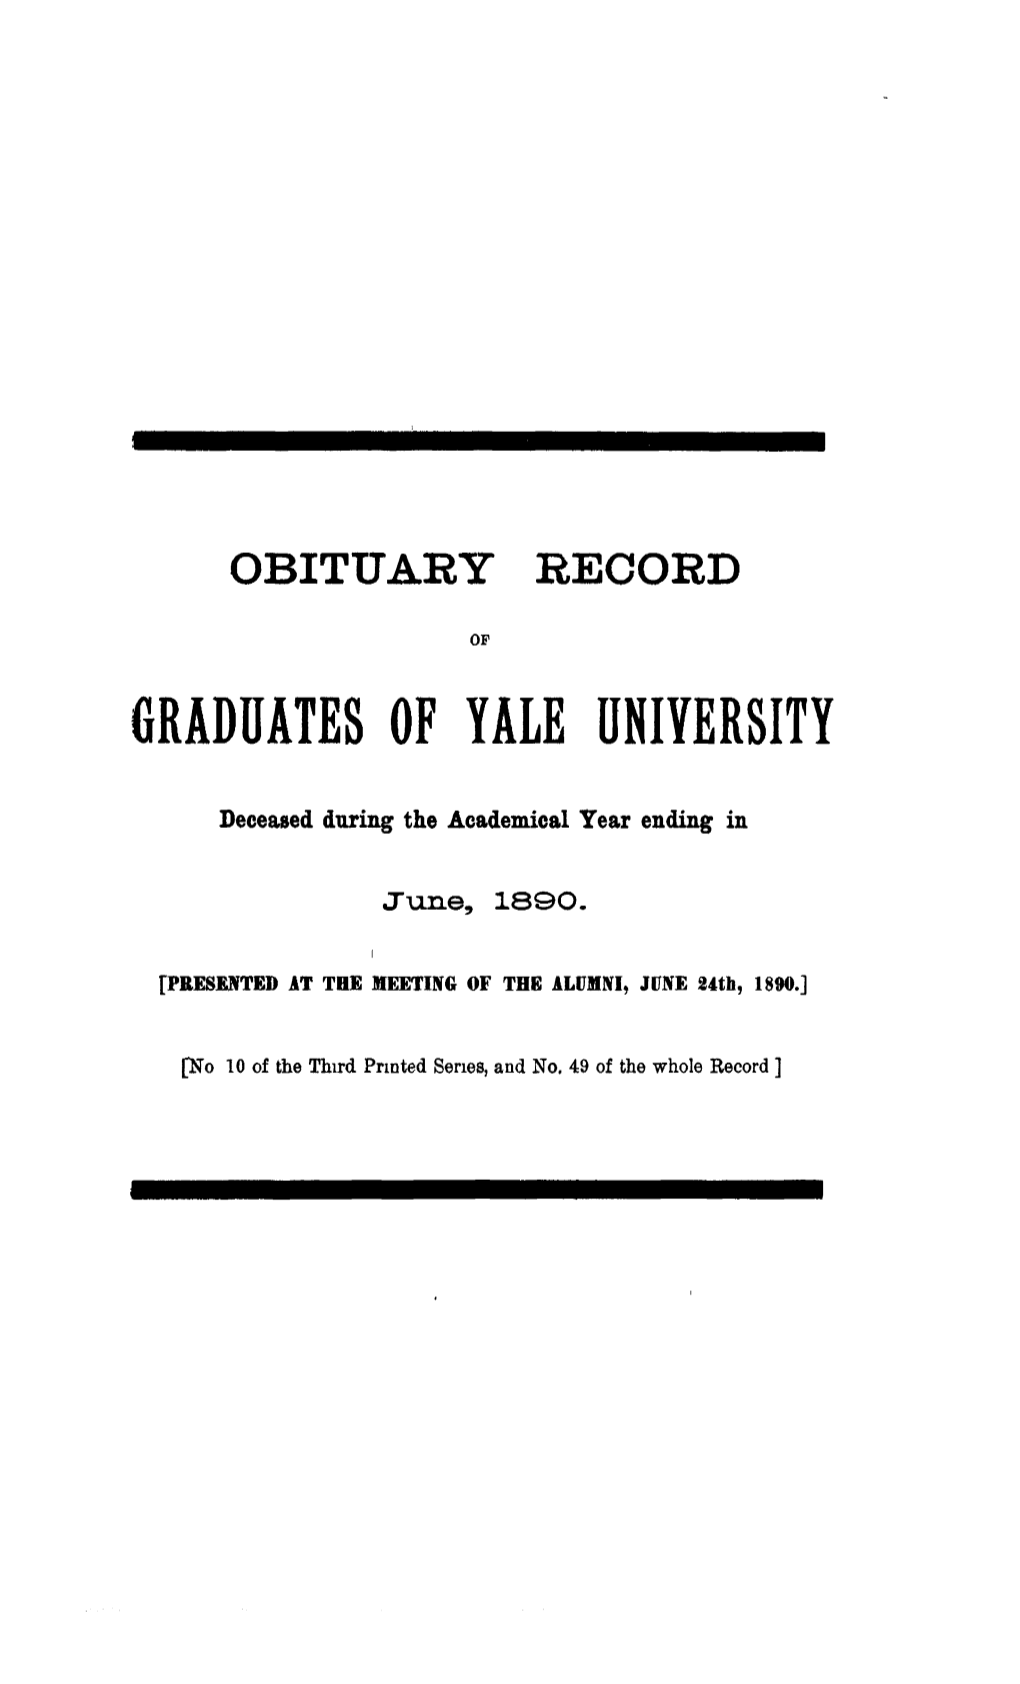 1889-1890 Obituary Record of Graduates of Yale University